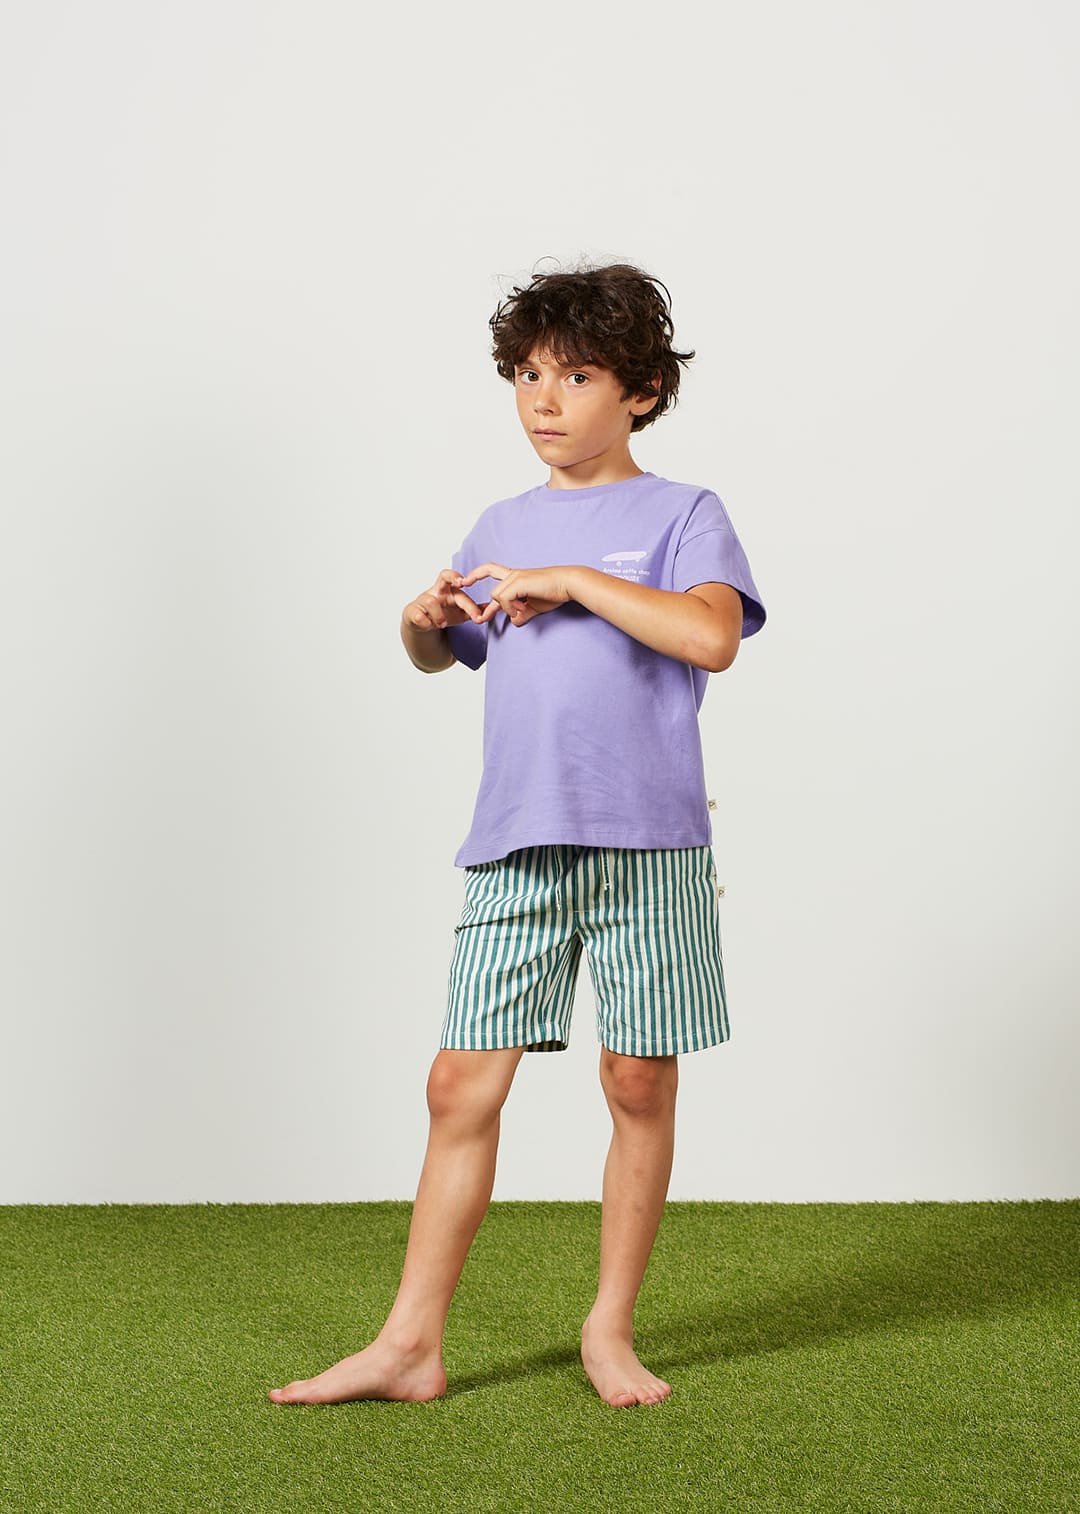 Shorts Boy Denim Stripe Green Franck - قميص